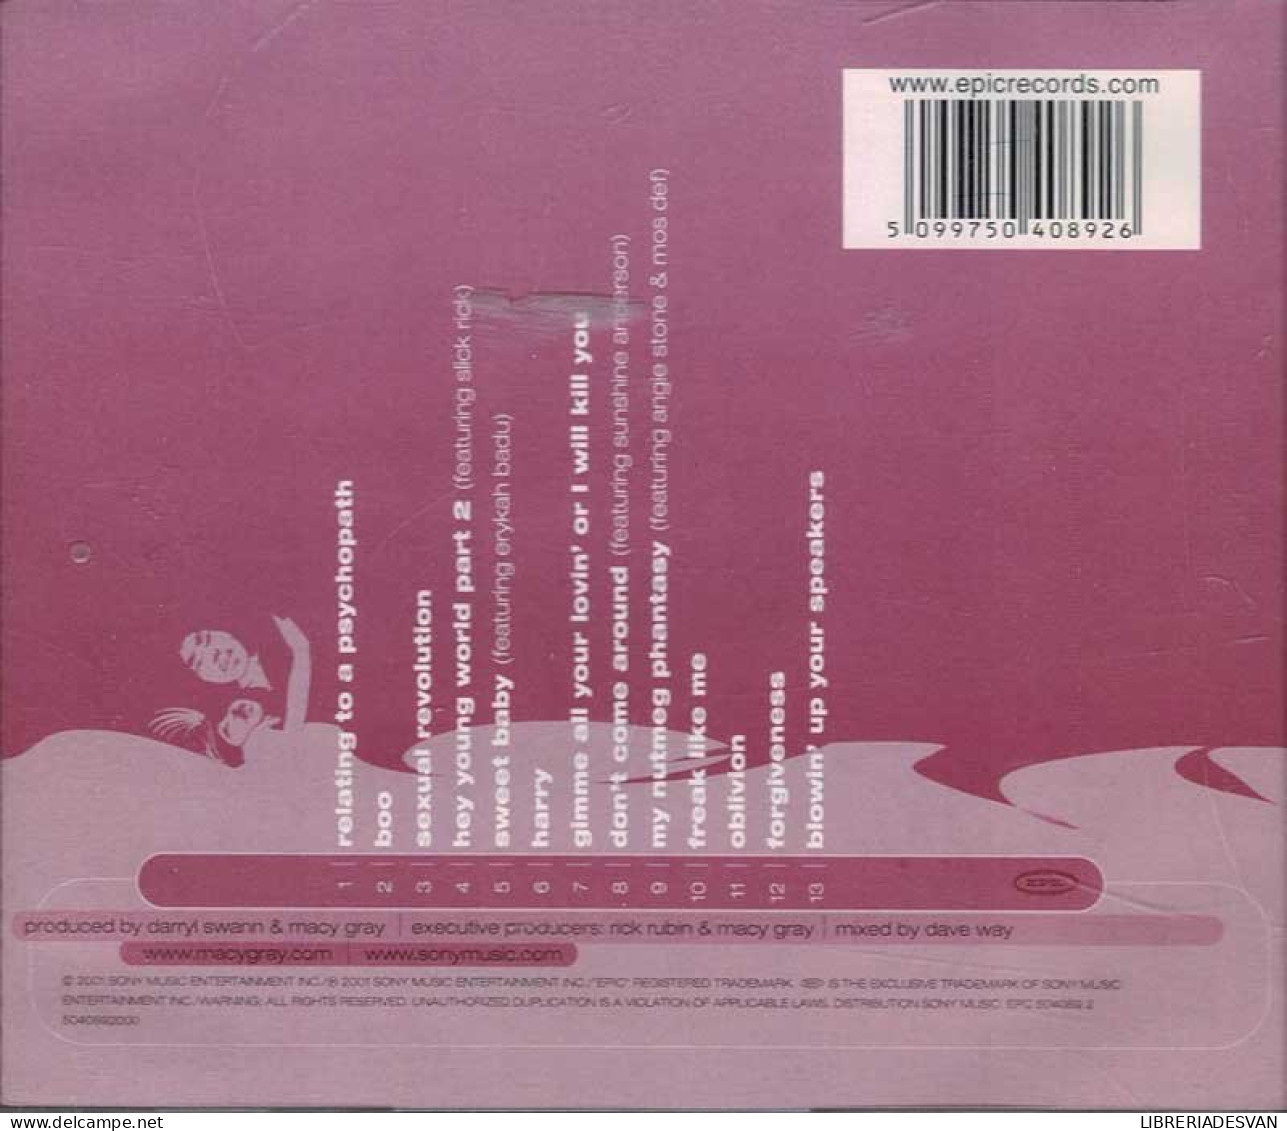 Macy Gray - The Id. CD - Jazz